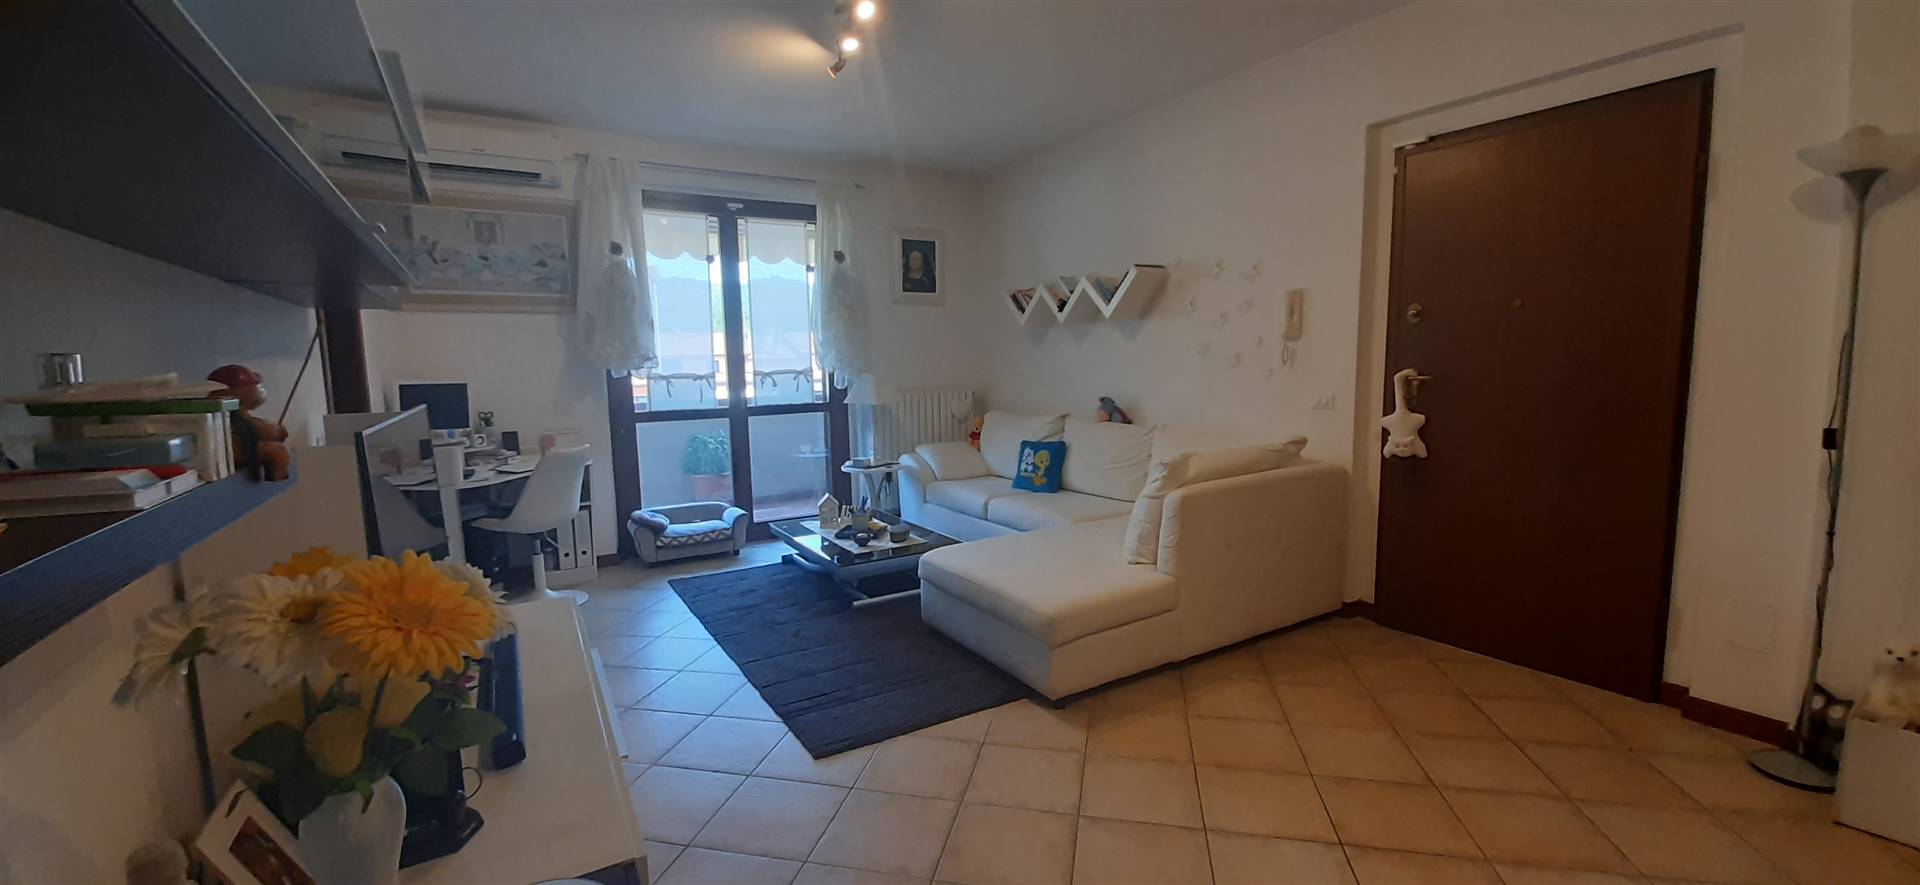 Appartamento in vendita a Serravalle Pistoiese, 4 locali, zona e di Serravalle, prezzo € 164.000 | PortaleAgenzieImmobiliari.it